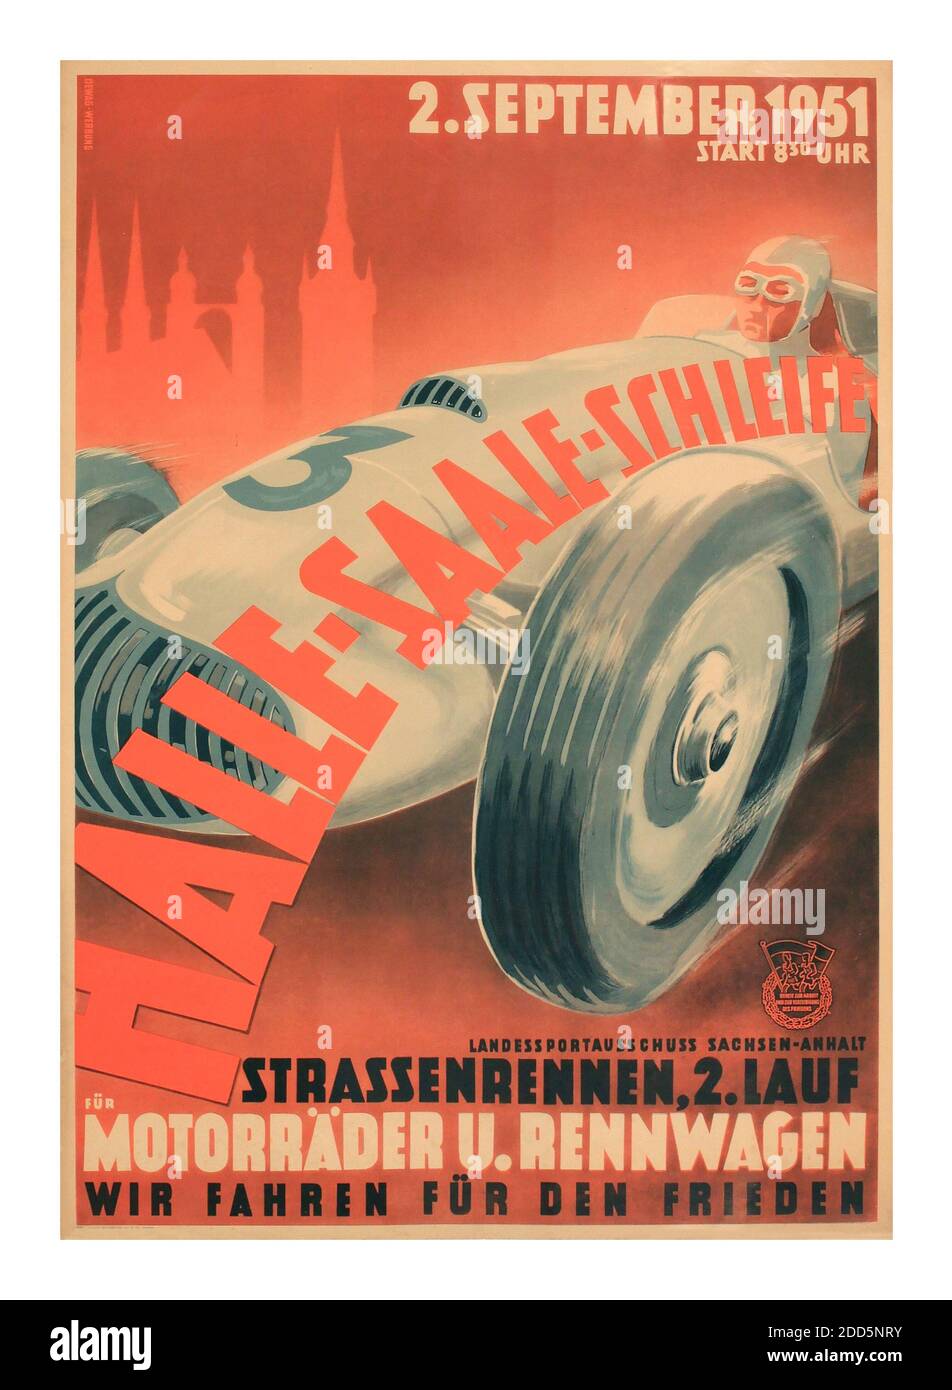 Halle-Saale-Schleife, 2. Settembre 1951, poster originale stampato da Dewag-Werburg 1951 - Motorrader U. Rennwagen. 'Motocicli e auto da corsa' wir fahren fur den frieden ''guidiamo per la pace' Foto Stock